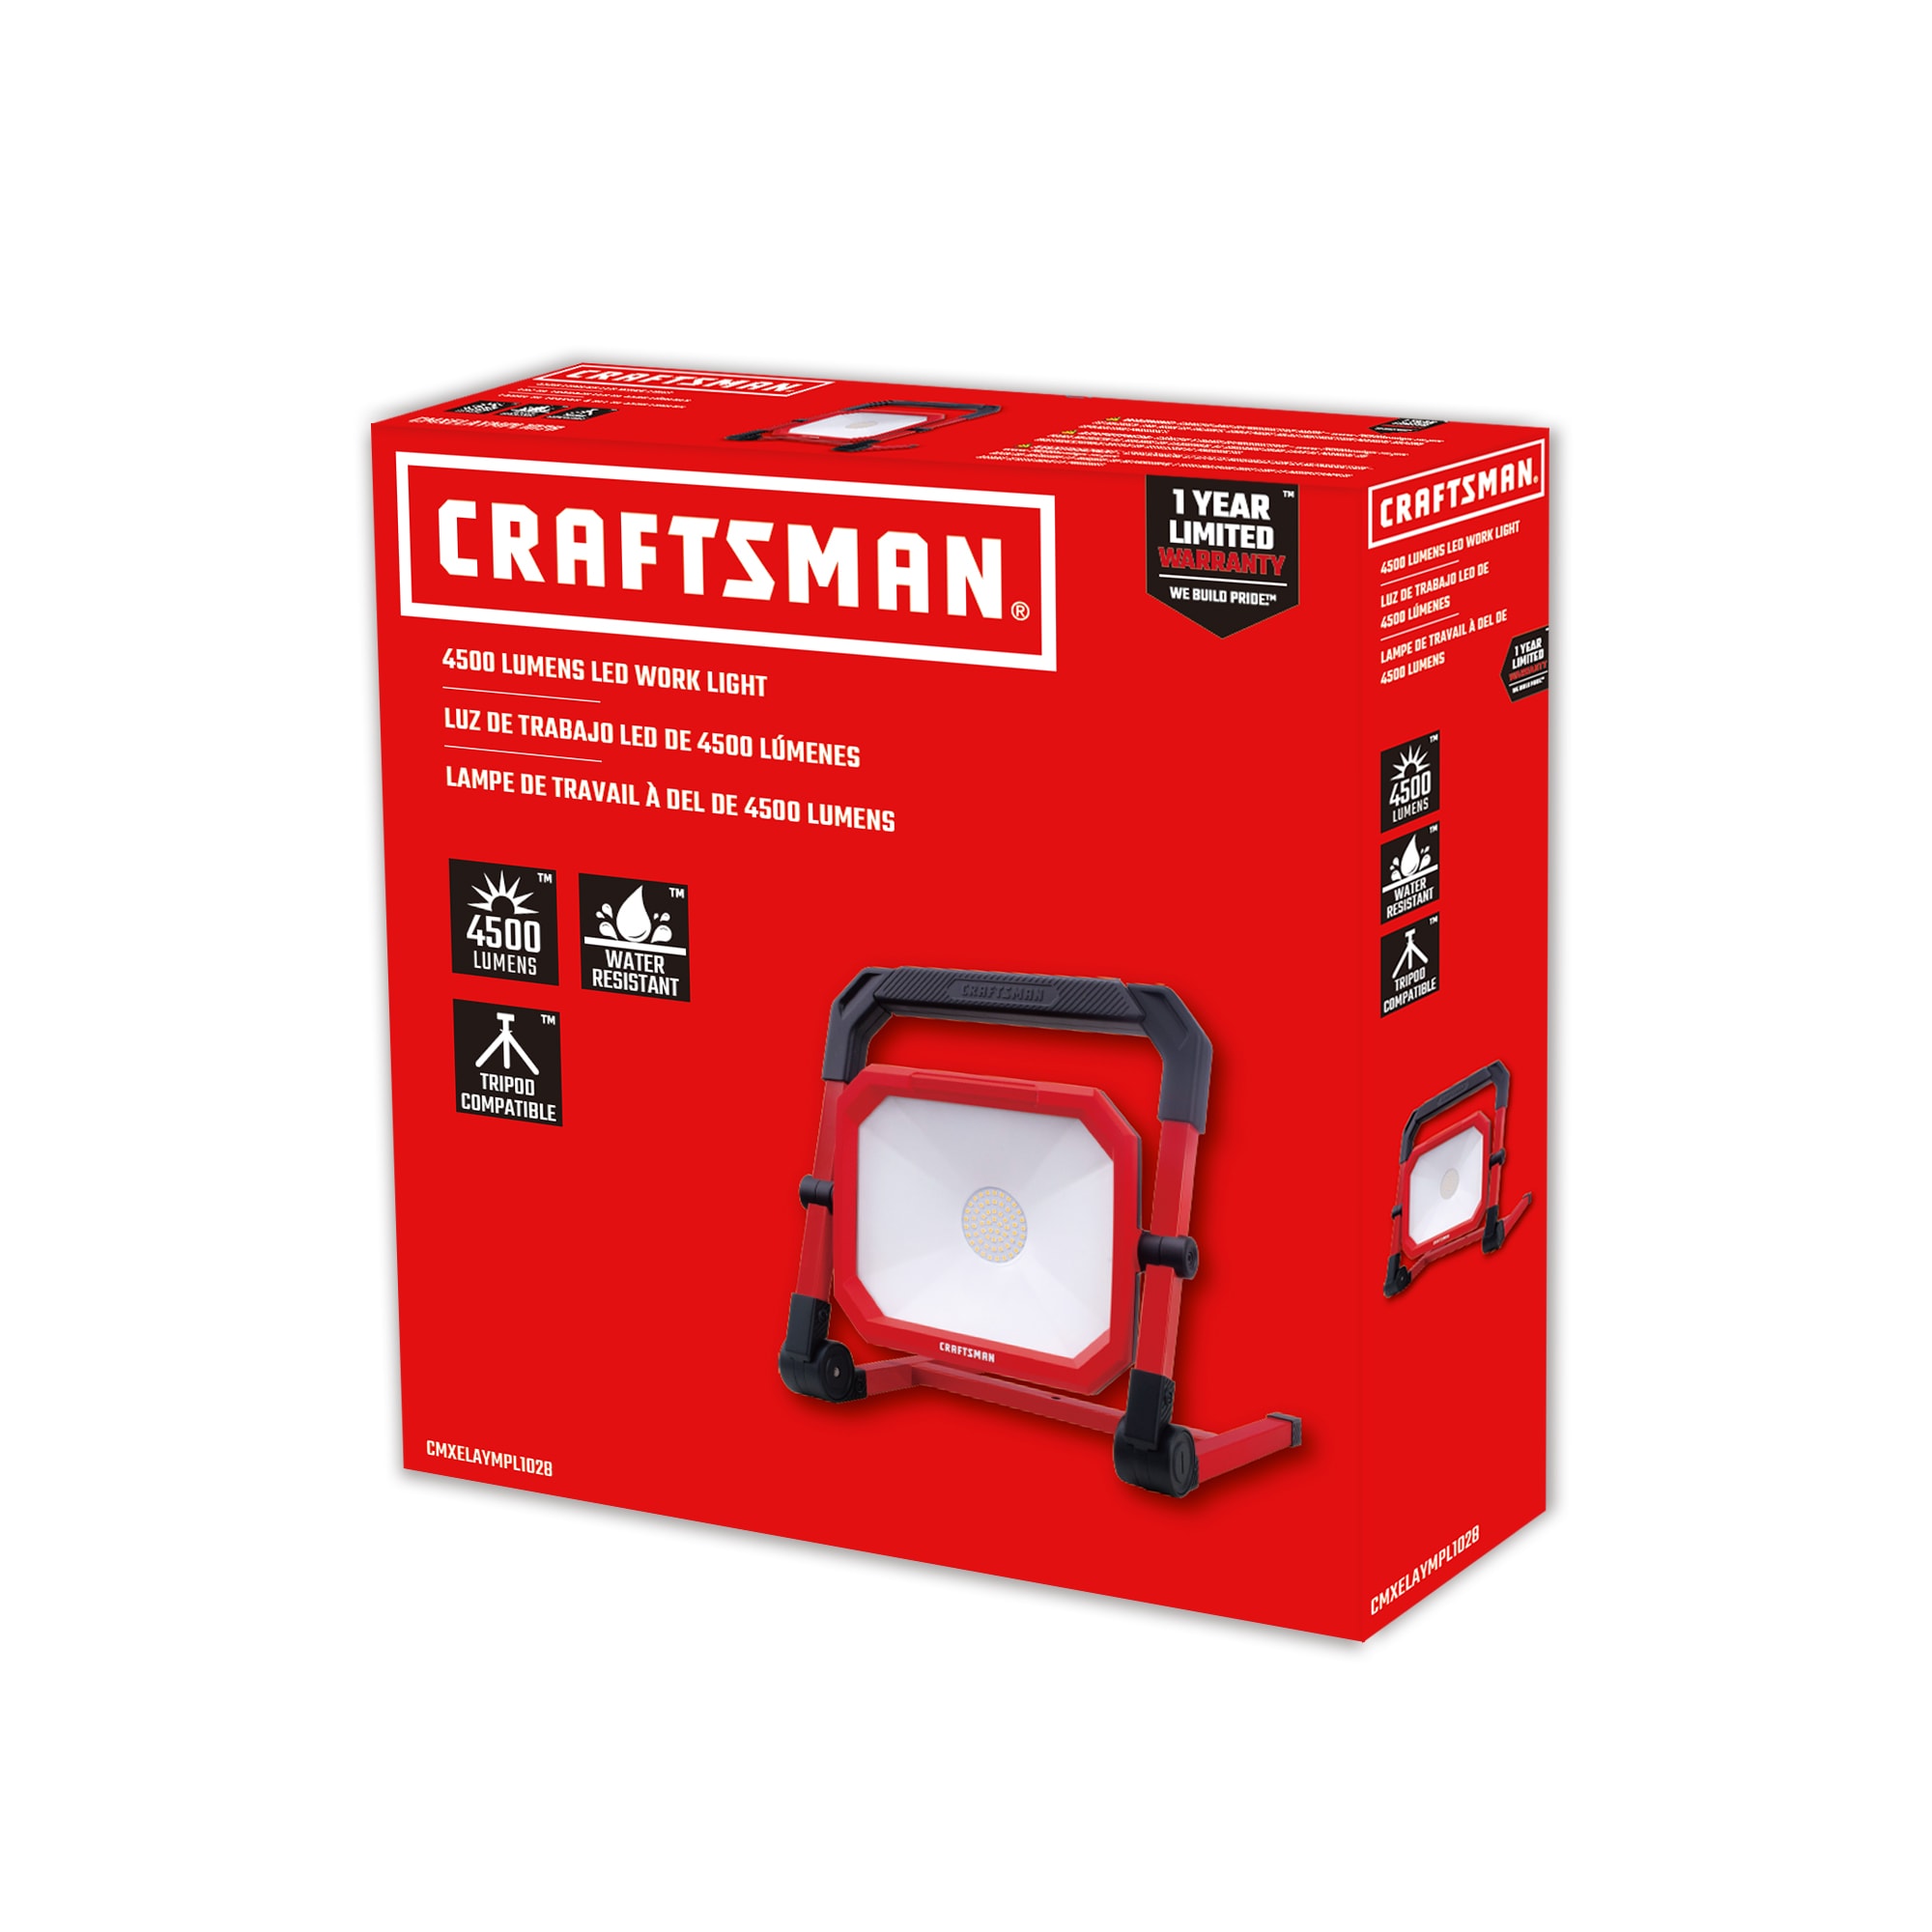 Craftsman LED Work Lights For Shop and Jobsite 